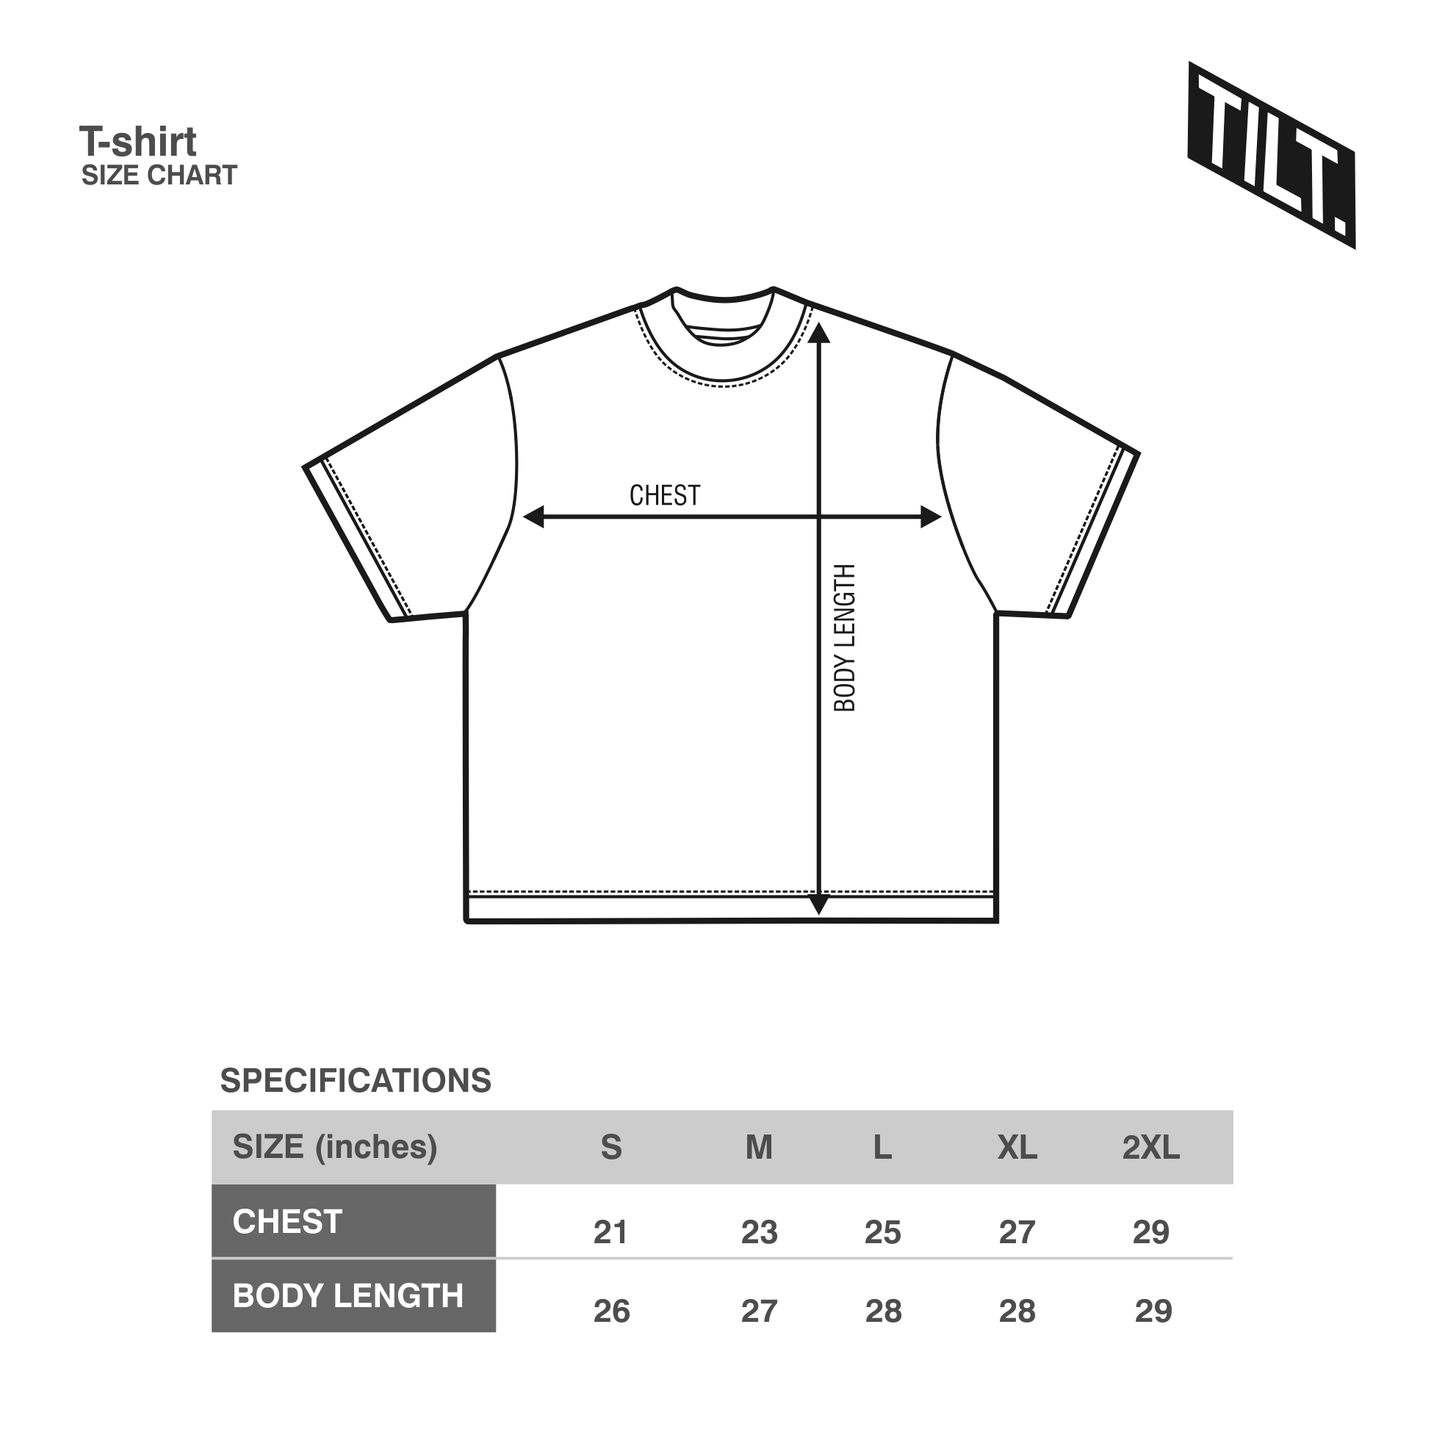 TILT. Kobe Bryant T-shirt